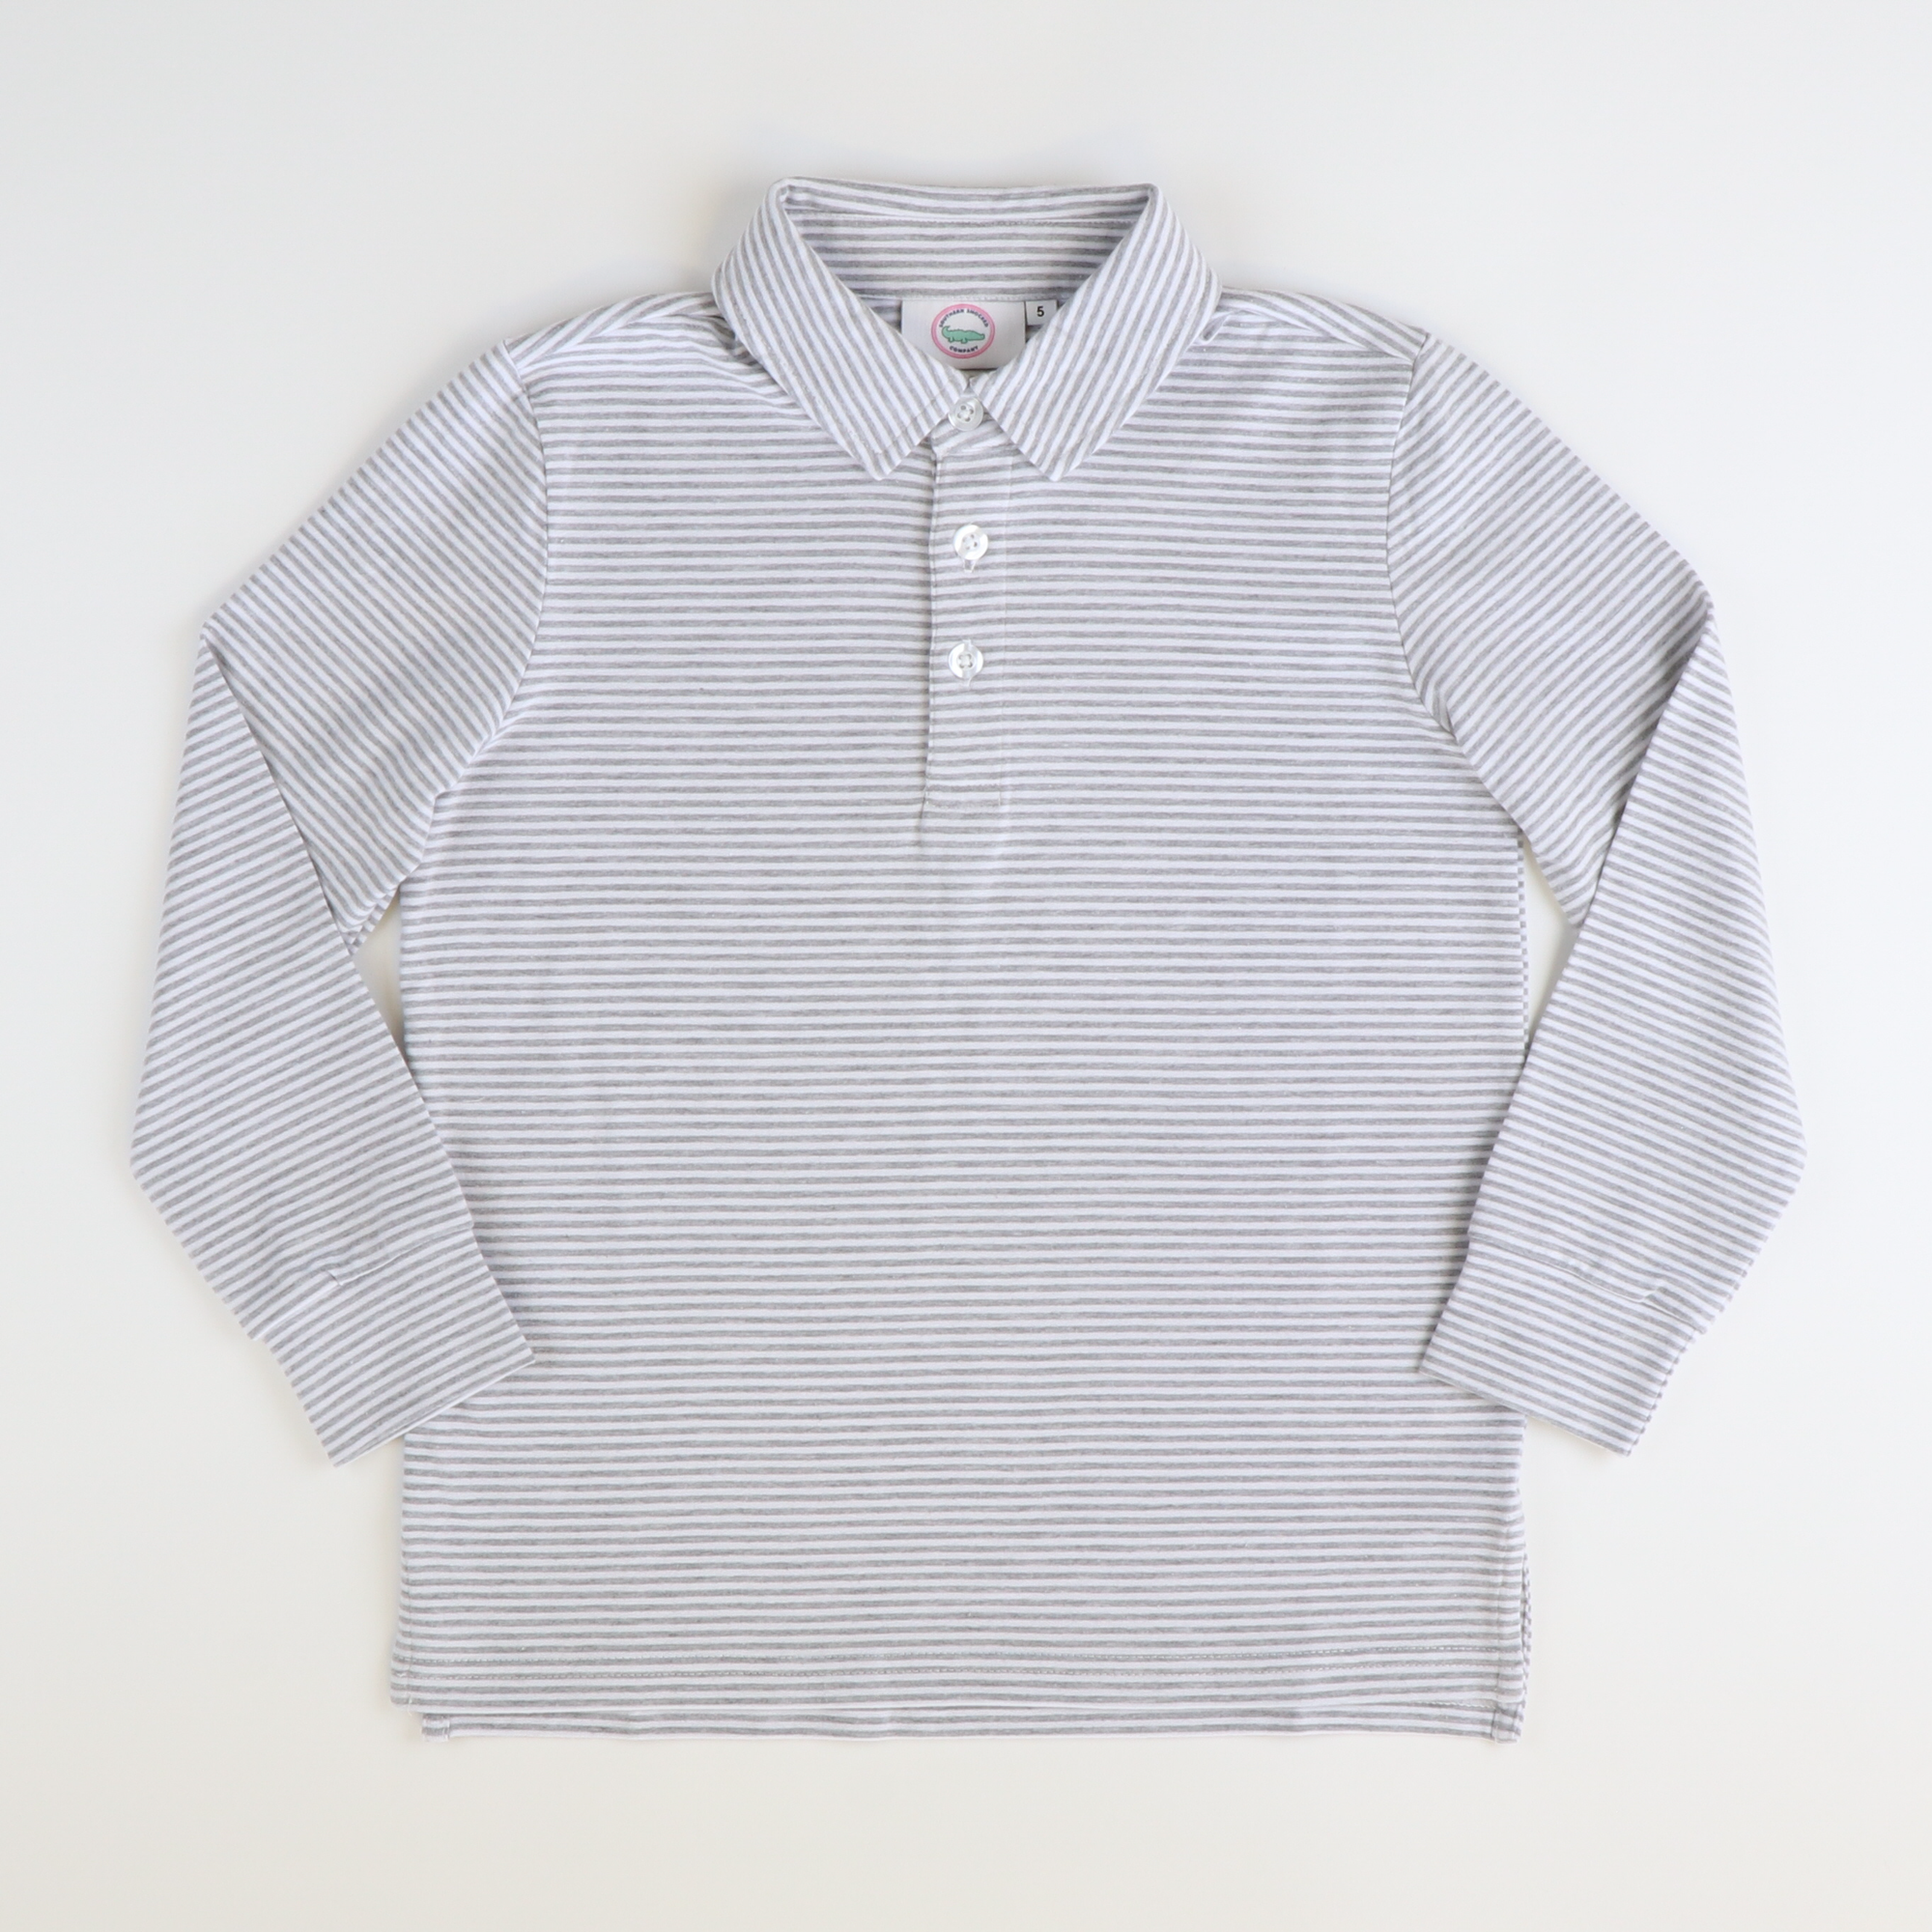 Boys Signature L/S Knit Polo - Gray & White Thin Stripe